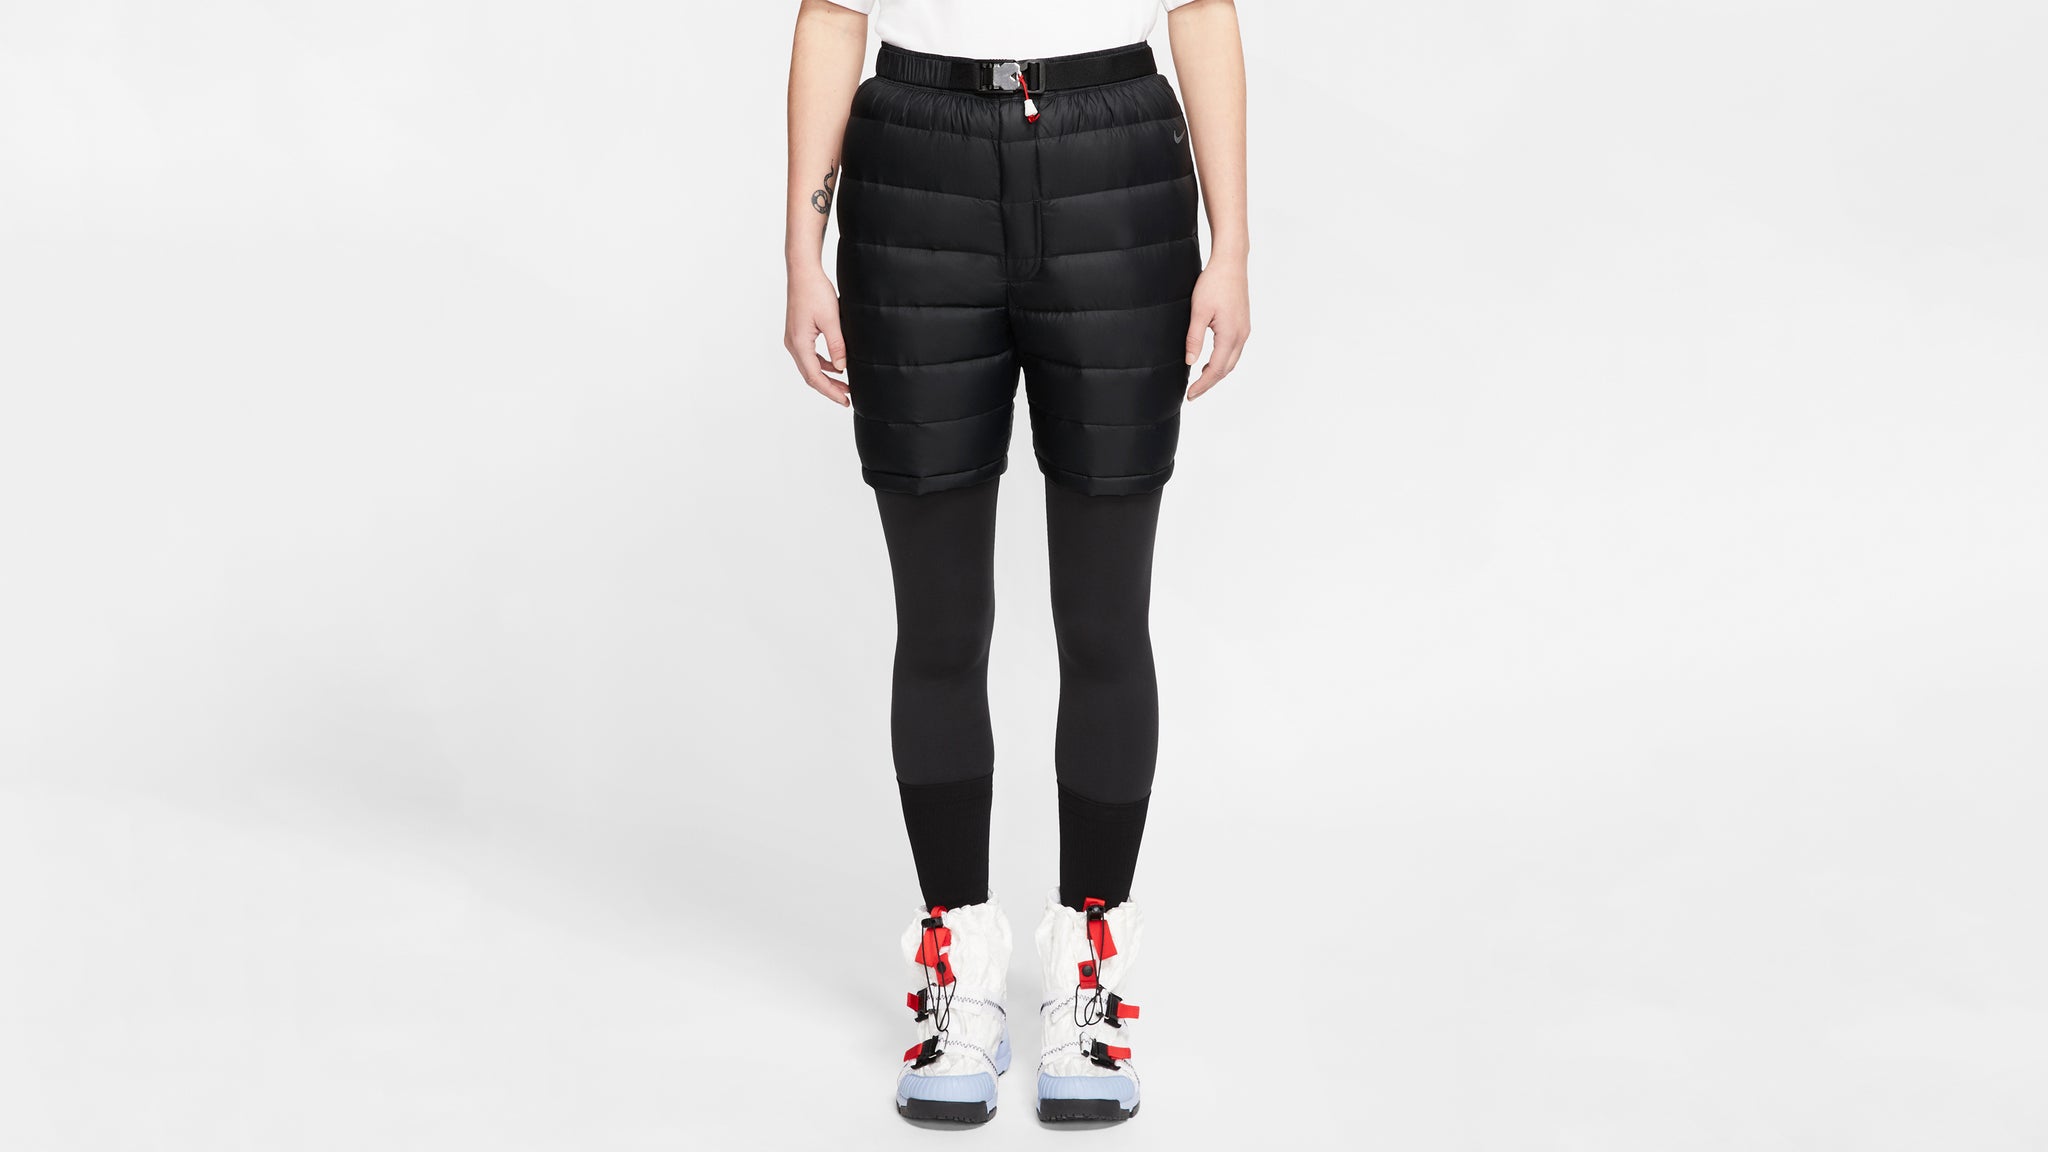 Nike X Tom Sachs Padded Shorts in Black for Men